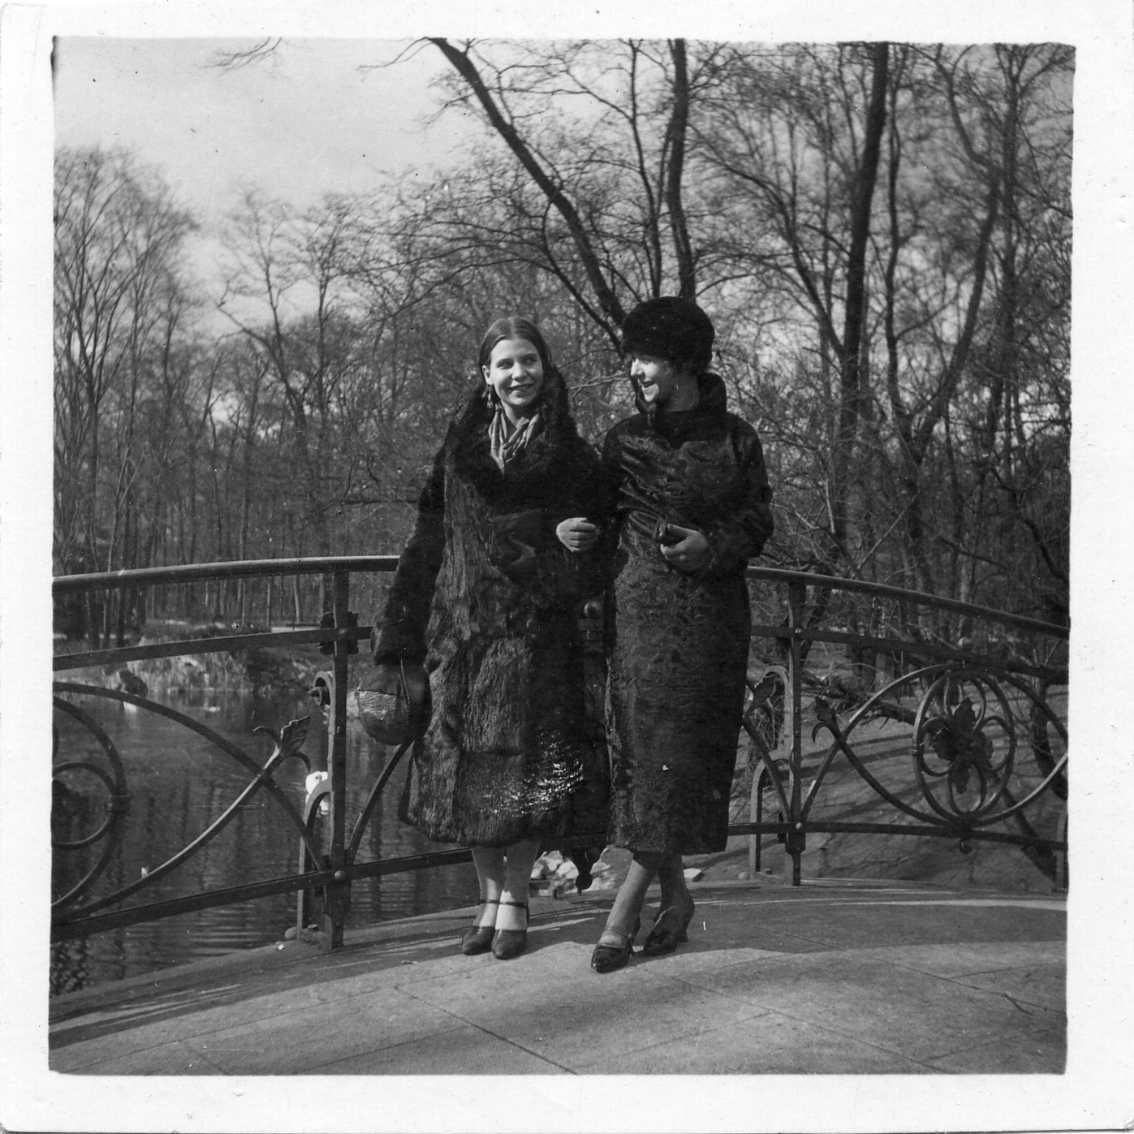 Två kvinnor i mörka kappor står armkrok på en bro med järnräcke i jugendstil. Det är vårvinter.